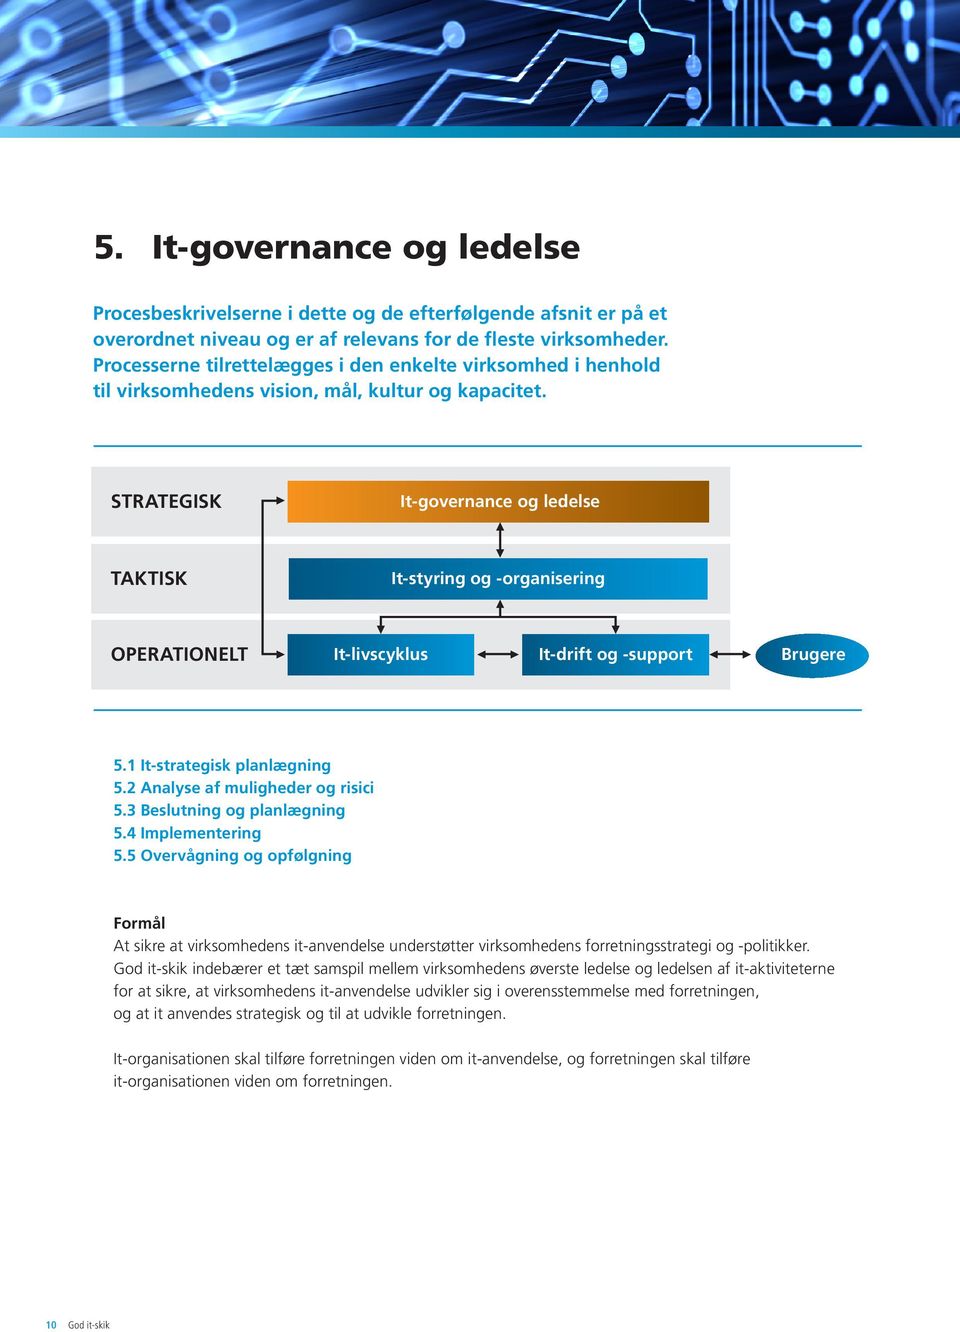 STRATEGISK It-governance og ledelse TAKTISK It-styring og -organisering OPERATIONELT It-livscyklus It-drift og -support Brugere 5.1 It-strategisk planlægning 5.2 Analyse af muligheder og risici 5.